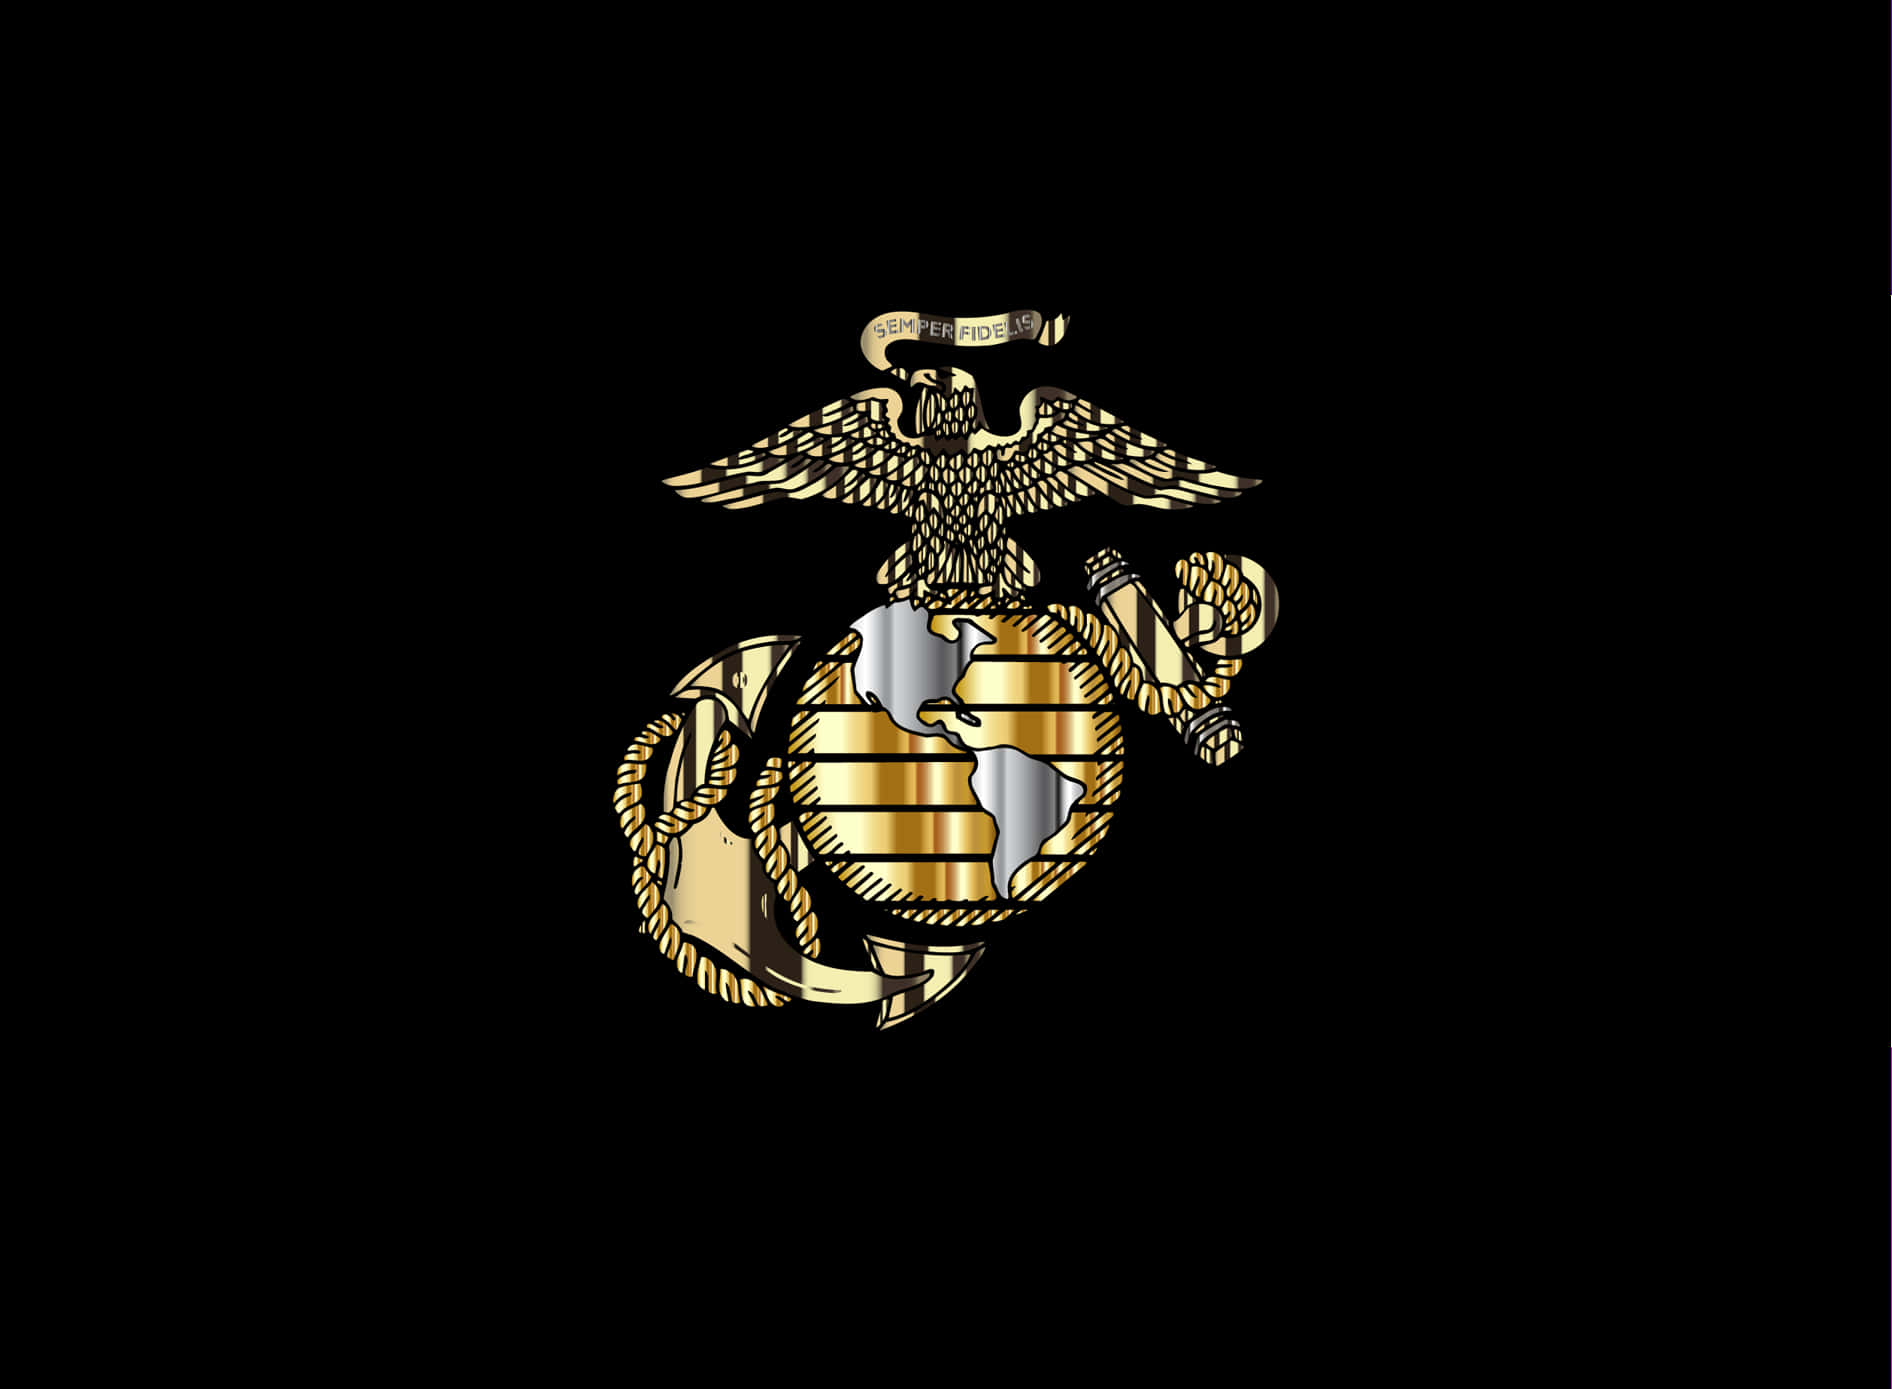 Ære de modige og tappre mænd og kvinder i United States Marine Corps. Wallpaper